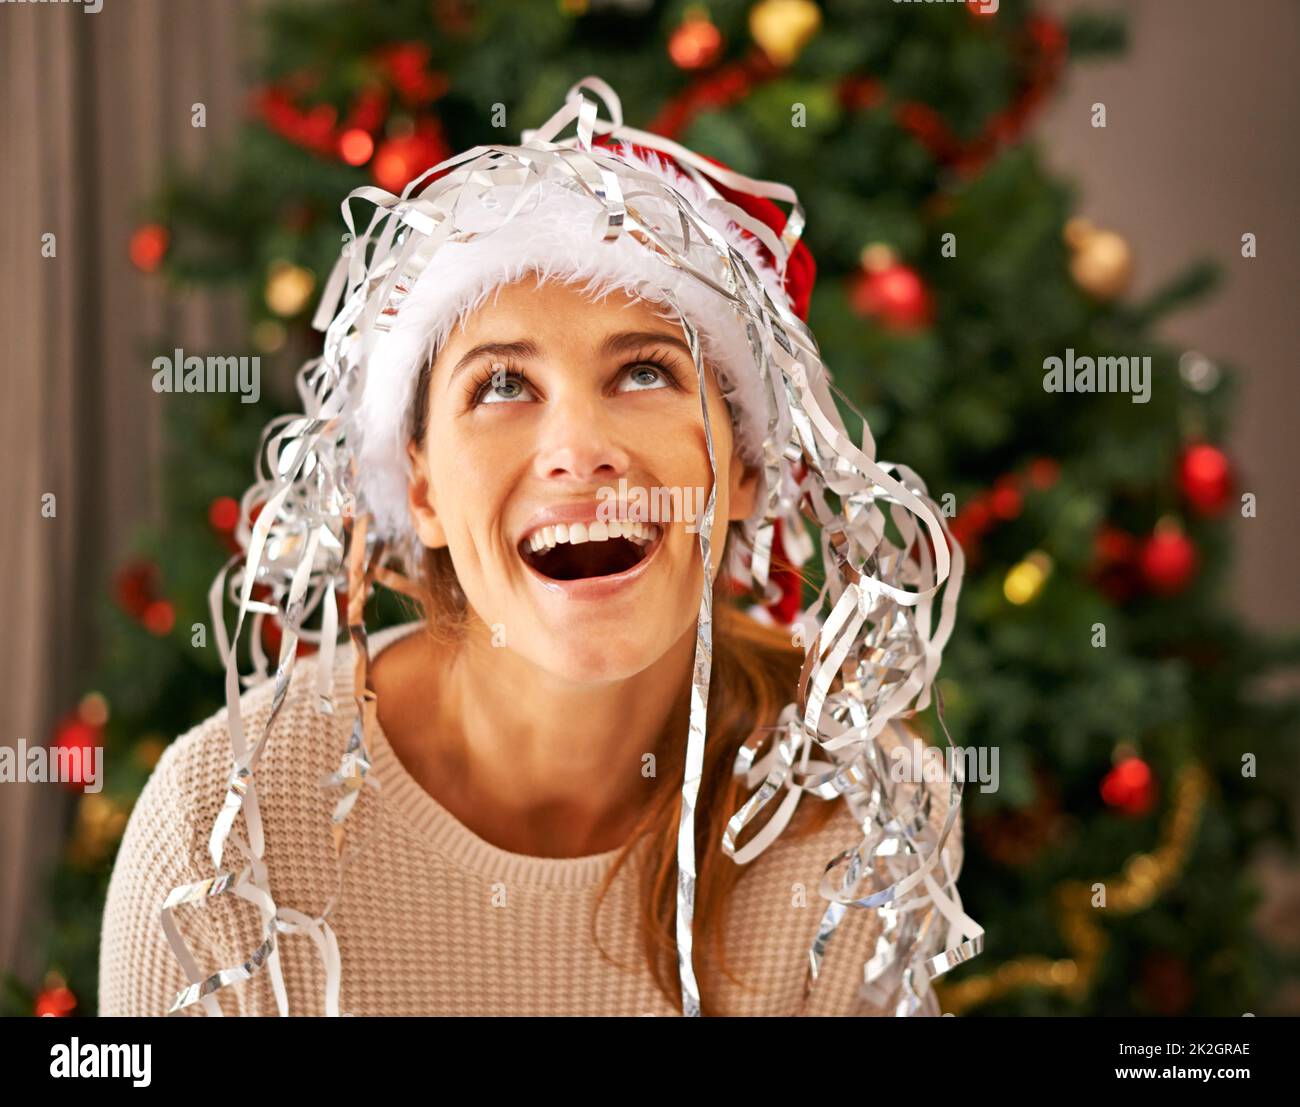 Es schneit. Aufnahme einer schönen jungen Frau, die einen verspielten Moment mit Weihnachtsdekorationen genießt. Stockfoto